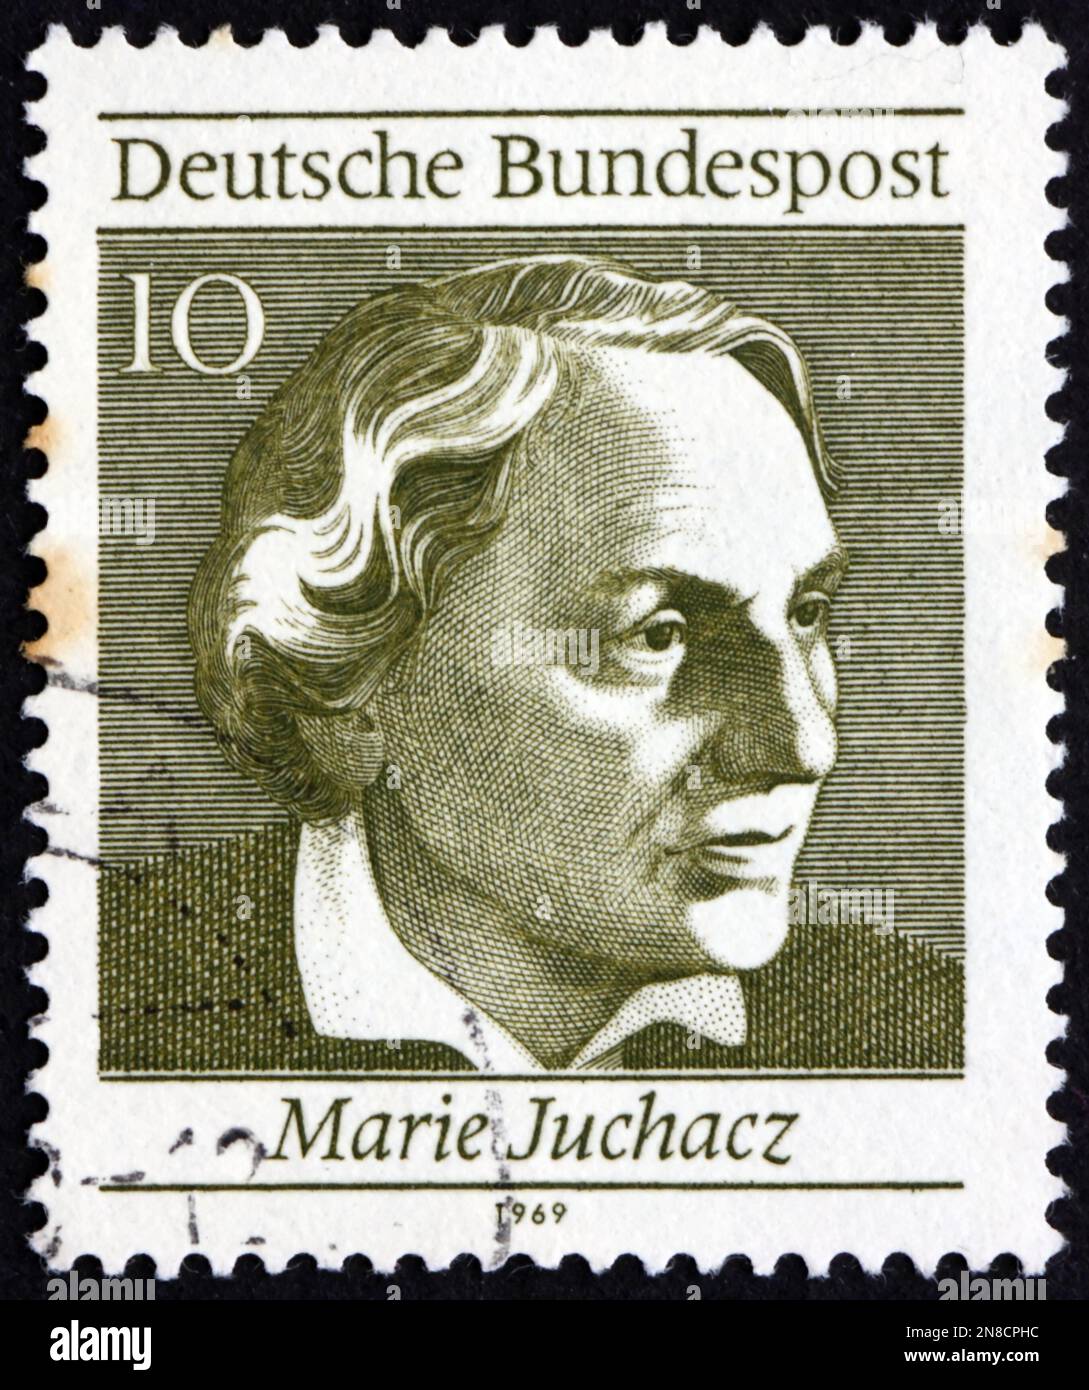 DEUTSCHLAND - CIRCA 1969: Ein in Deutschland gedruckter Stempel zeigt, dass Marie Juchacz (1879-1956) eine deutsche Sozialreformerin war, die erste weibliche Reichstagsmitglied war Stockfoto